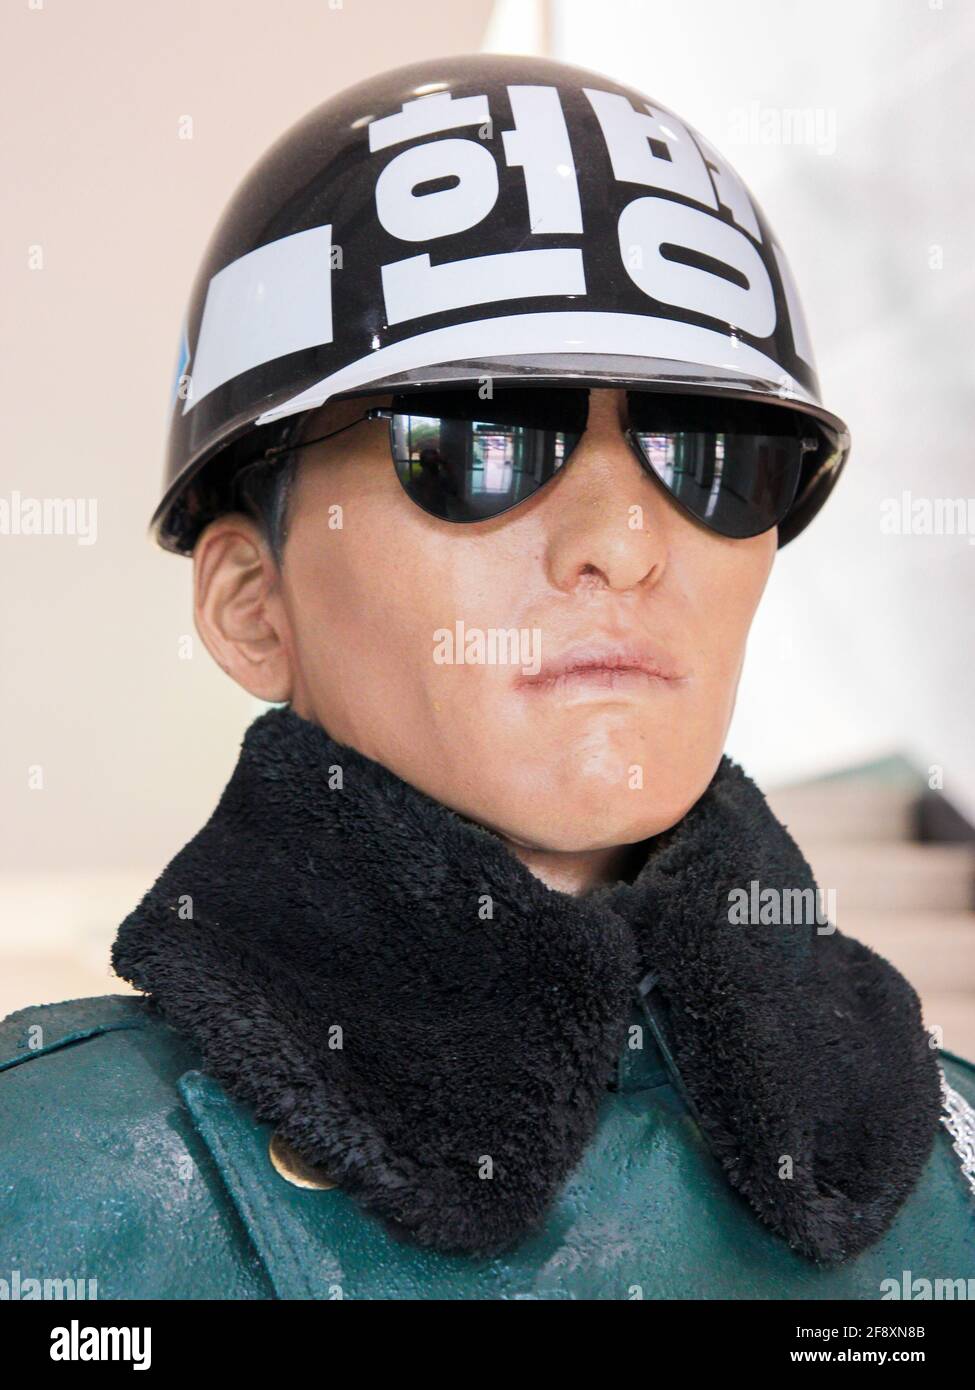 All'interno del centro visitatori, la testa di un modello a grandezza naturale di un soldato coreano in uniforme. Nella zona demilitarizzata (DMZ) vicino a Seoul, Corea del Sud. Foto Stock